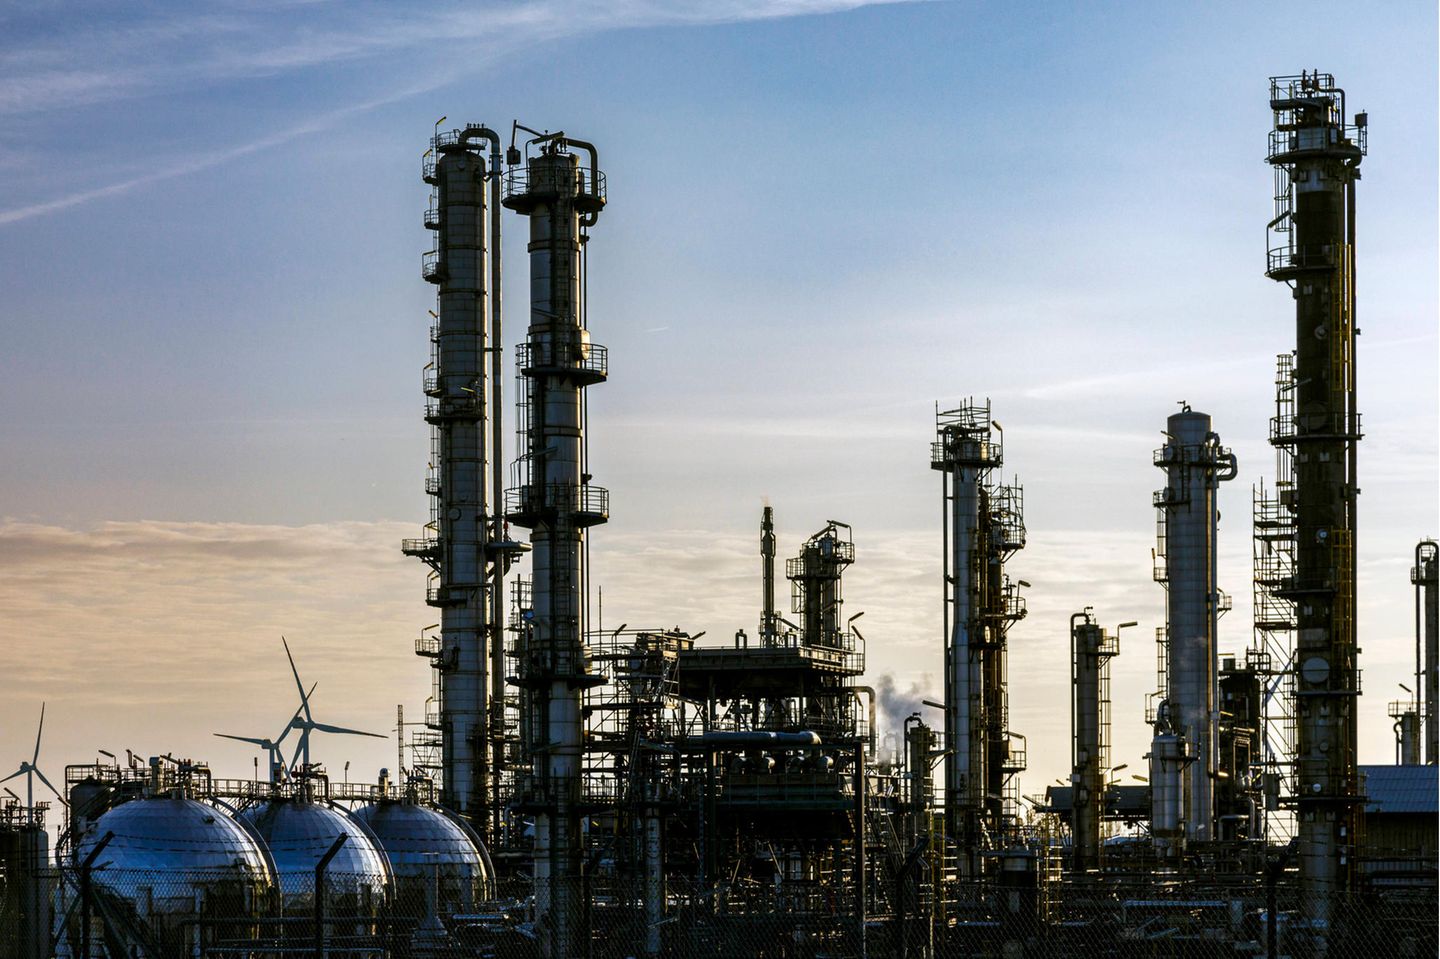 Raffinerien wie die Raffinerie Heide benötigen viel Energie. Denn die chemisch-pharmazeutische Industrie ist mit einem Anteil von 15 Prozent am Gesamtverbrauch der größte Gasverbraucher in Deutschland.